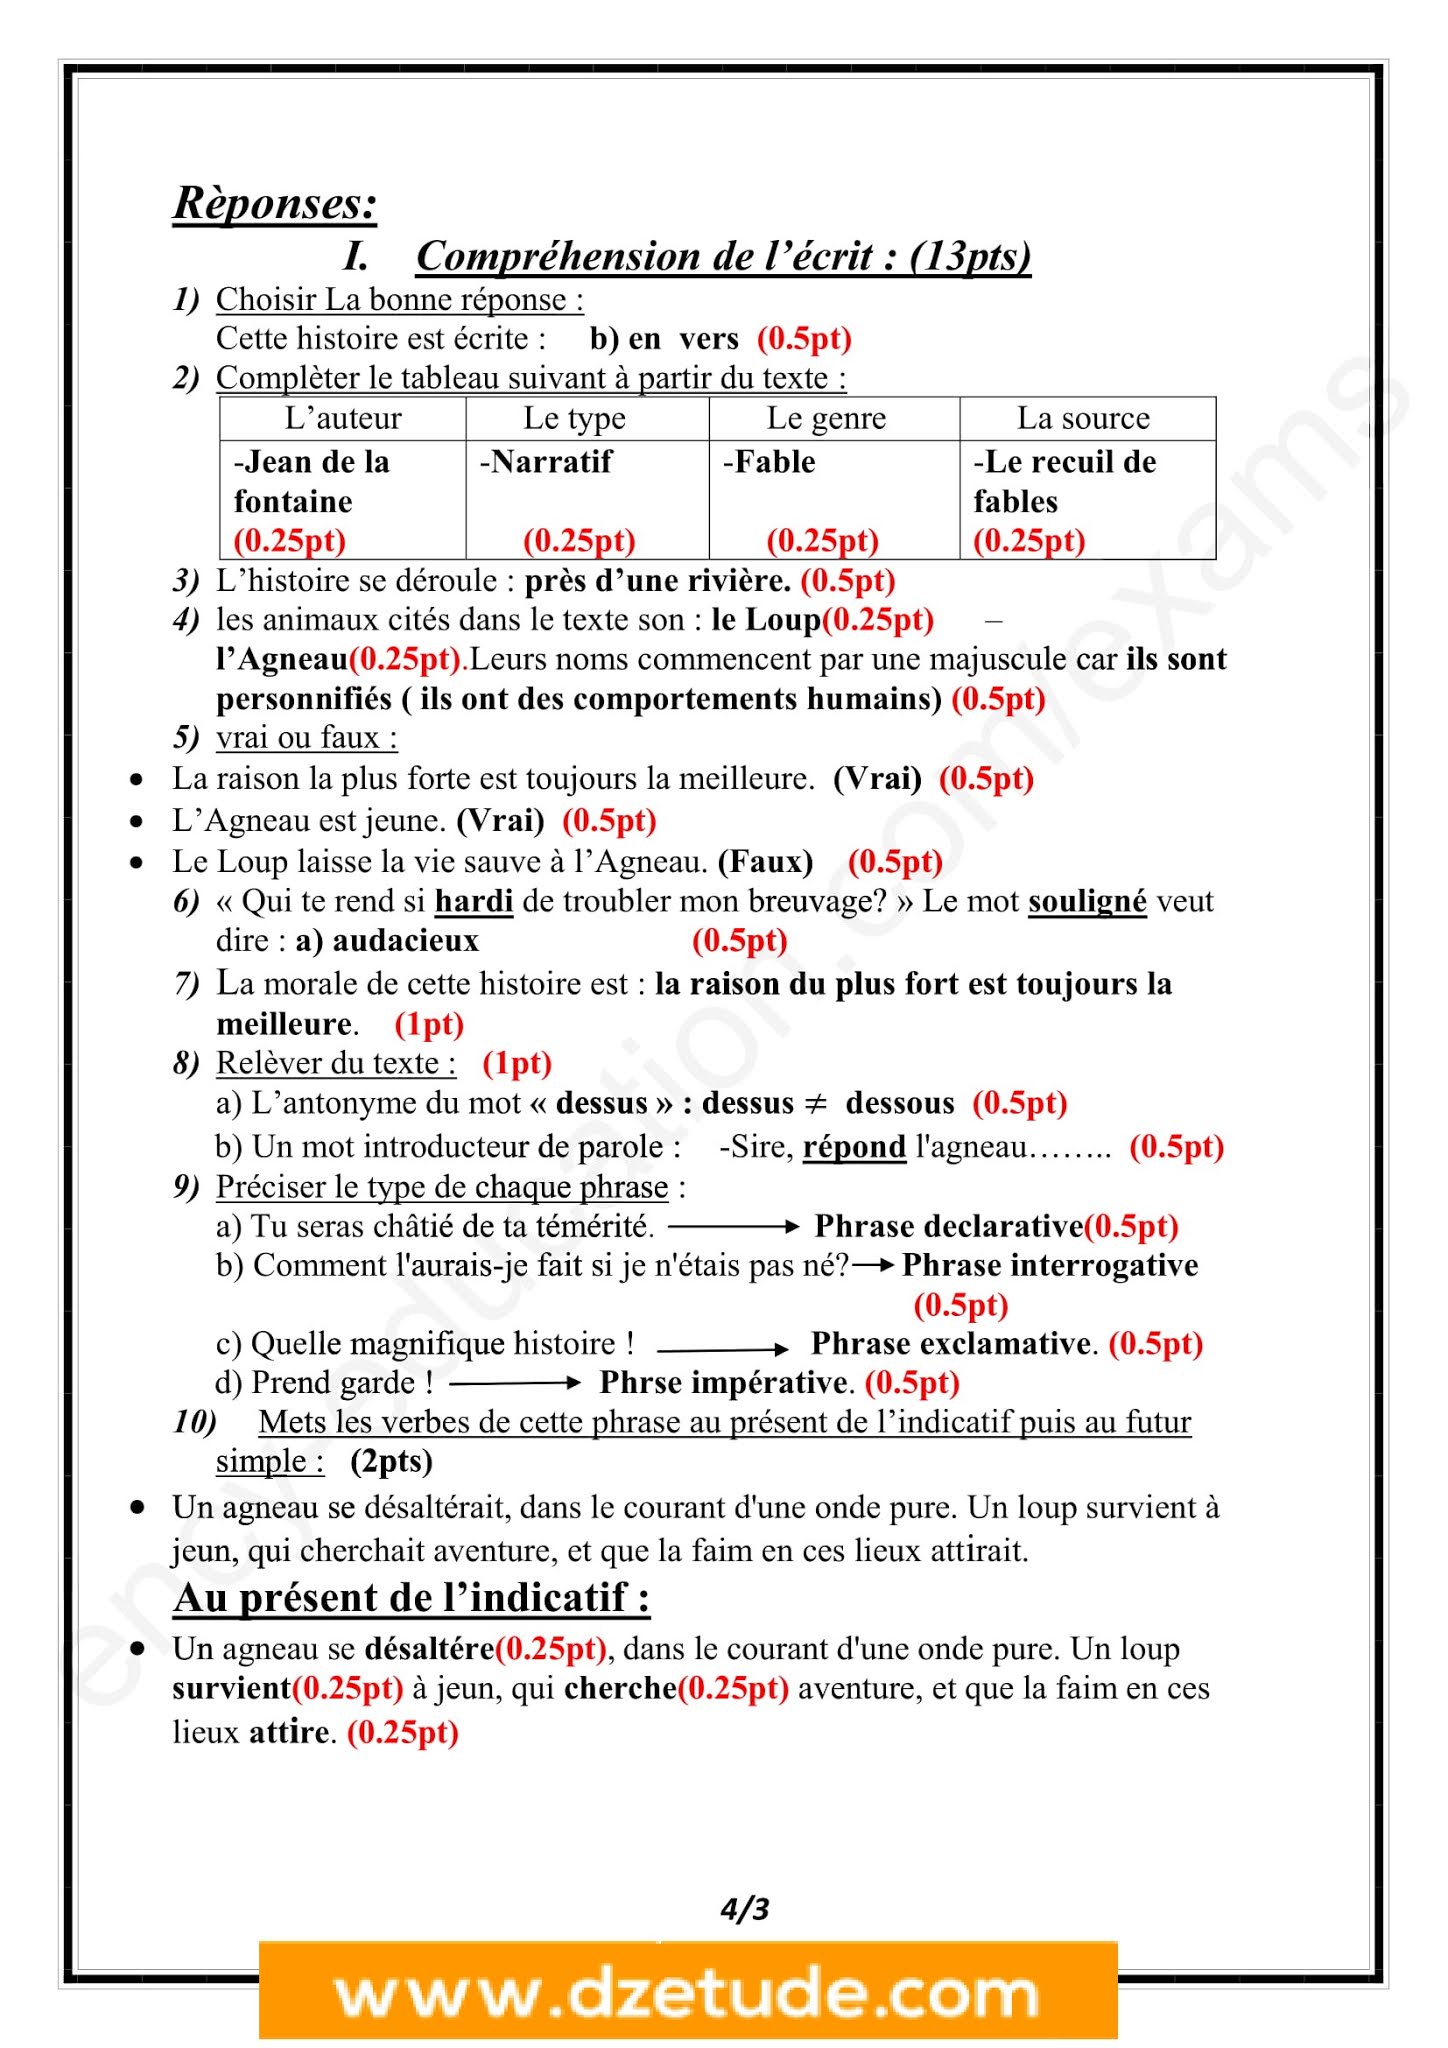 إختبار اللغة الفرنسية الفصل الثاني للسنة الثانية متوسط - الجيل الثاني نموذج 6